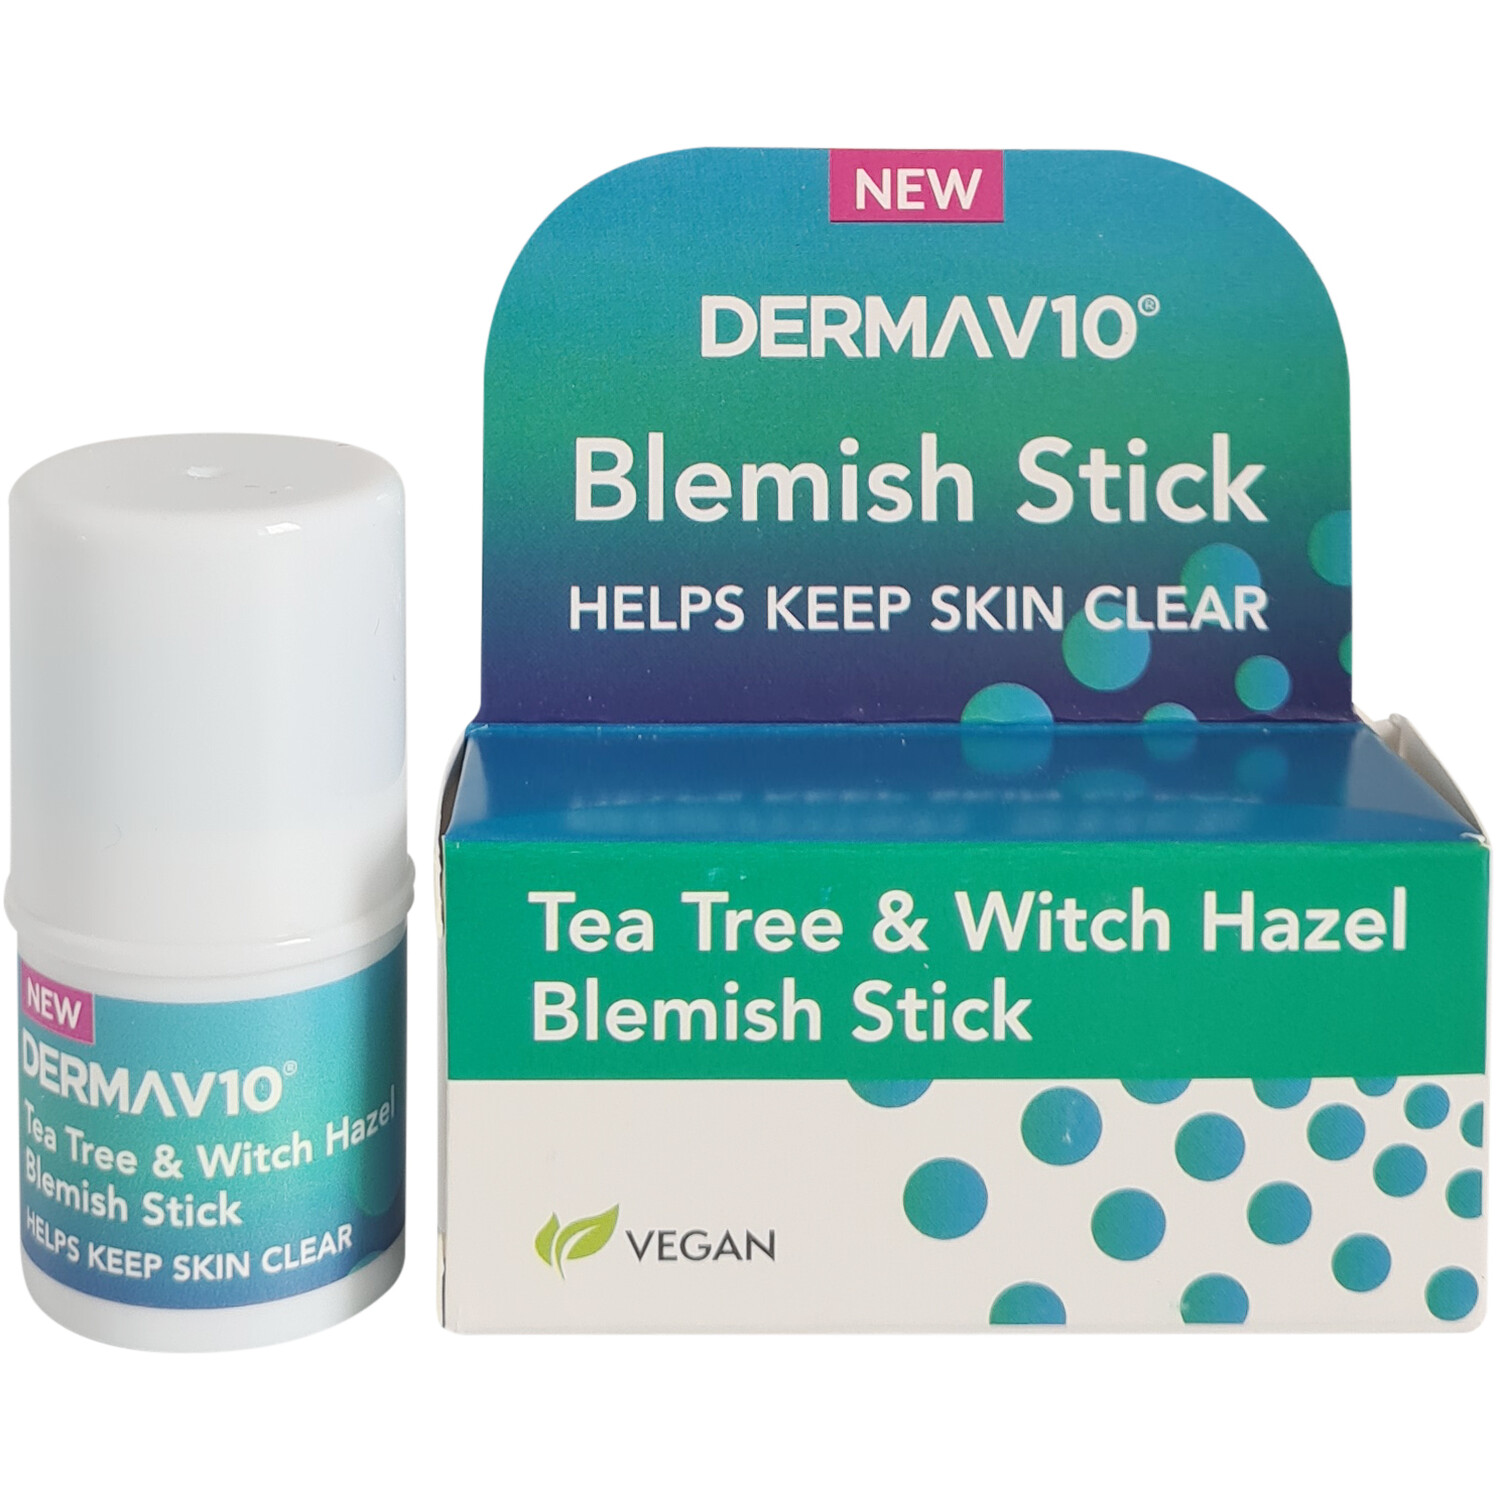 Tea Tree & Witch Hazel Blemish Stick - White Image